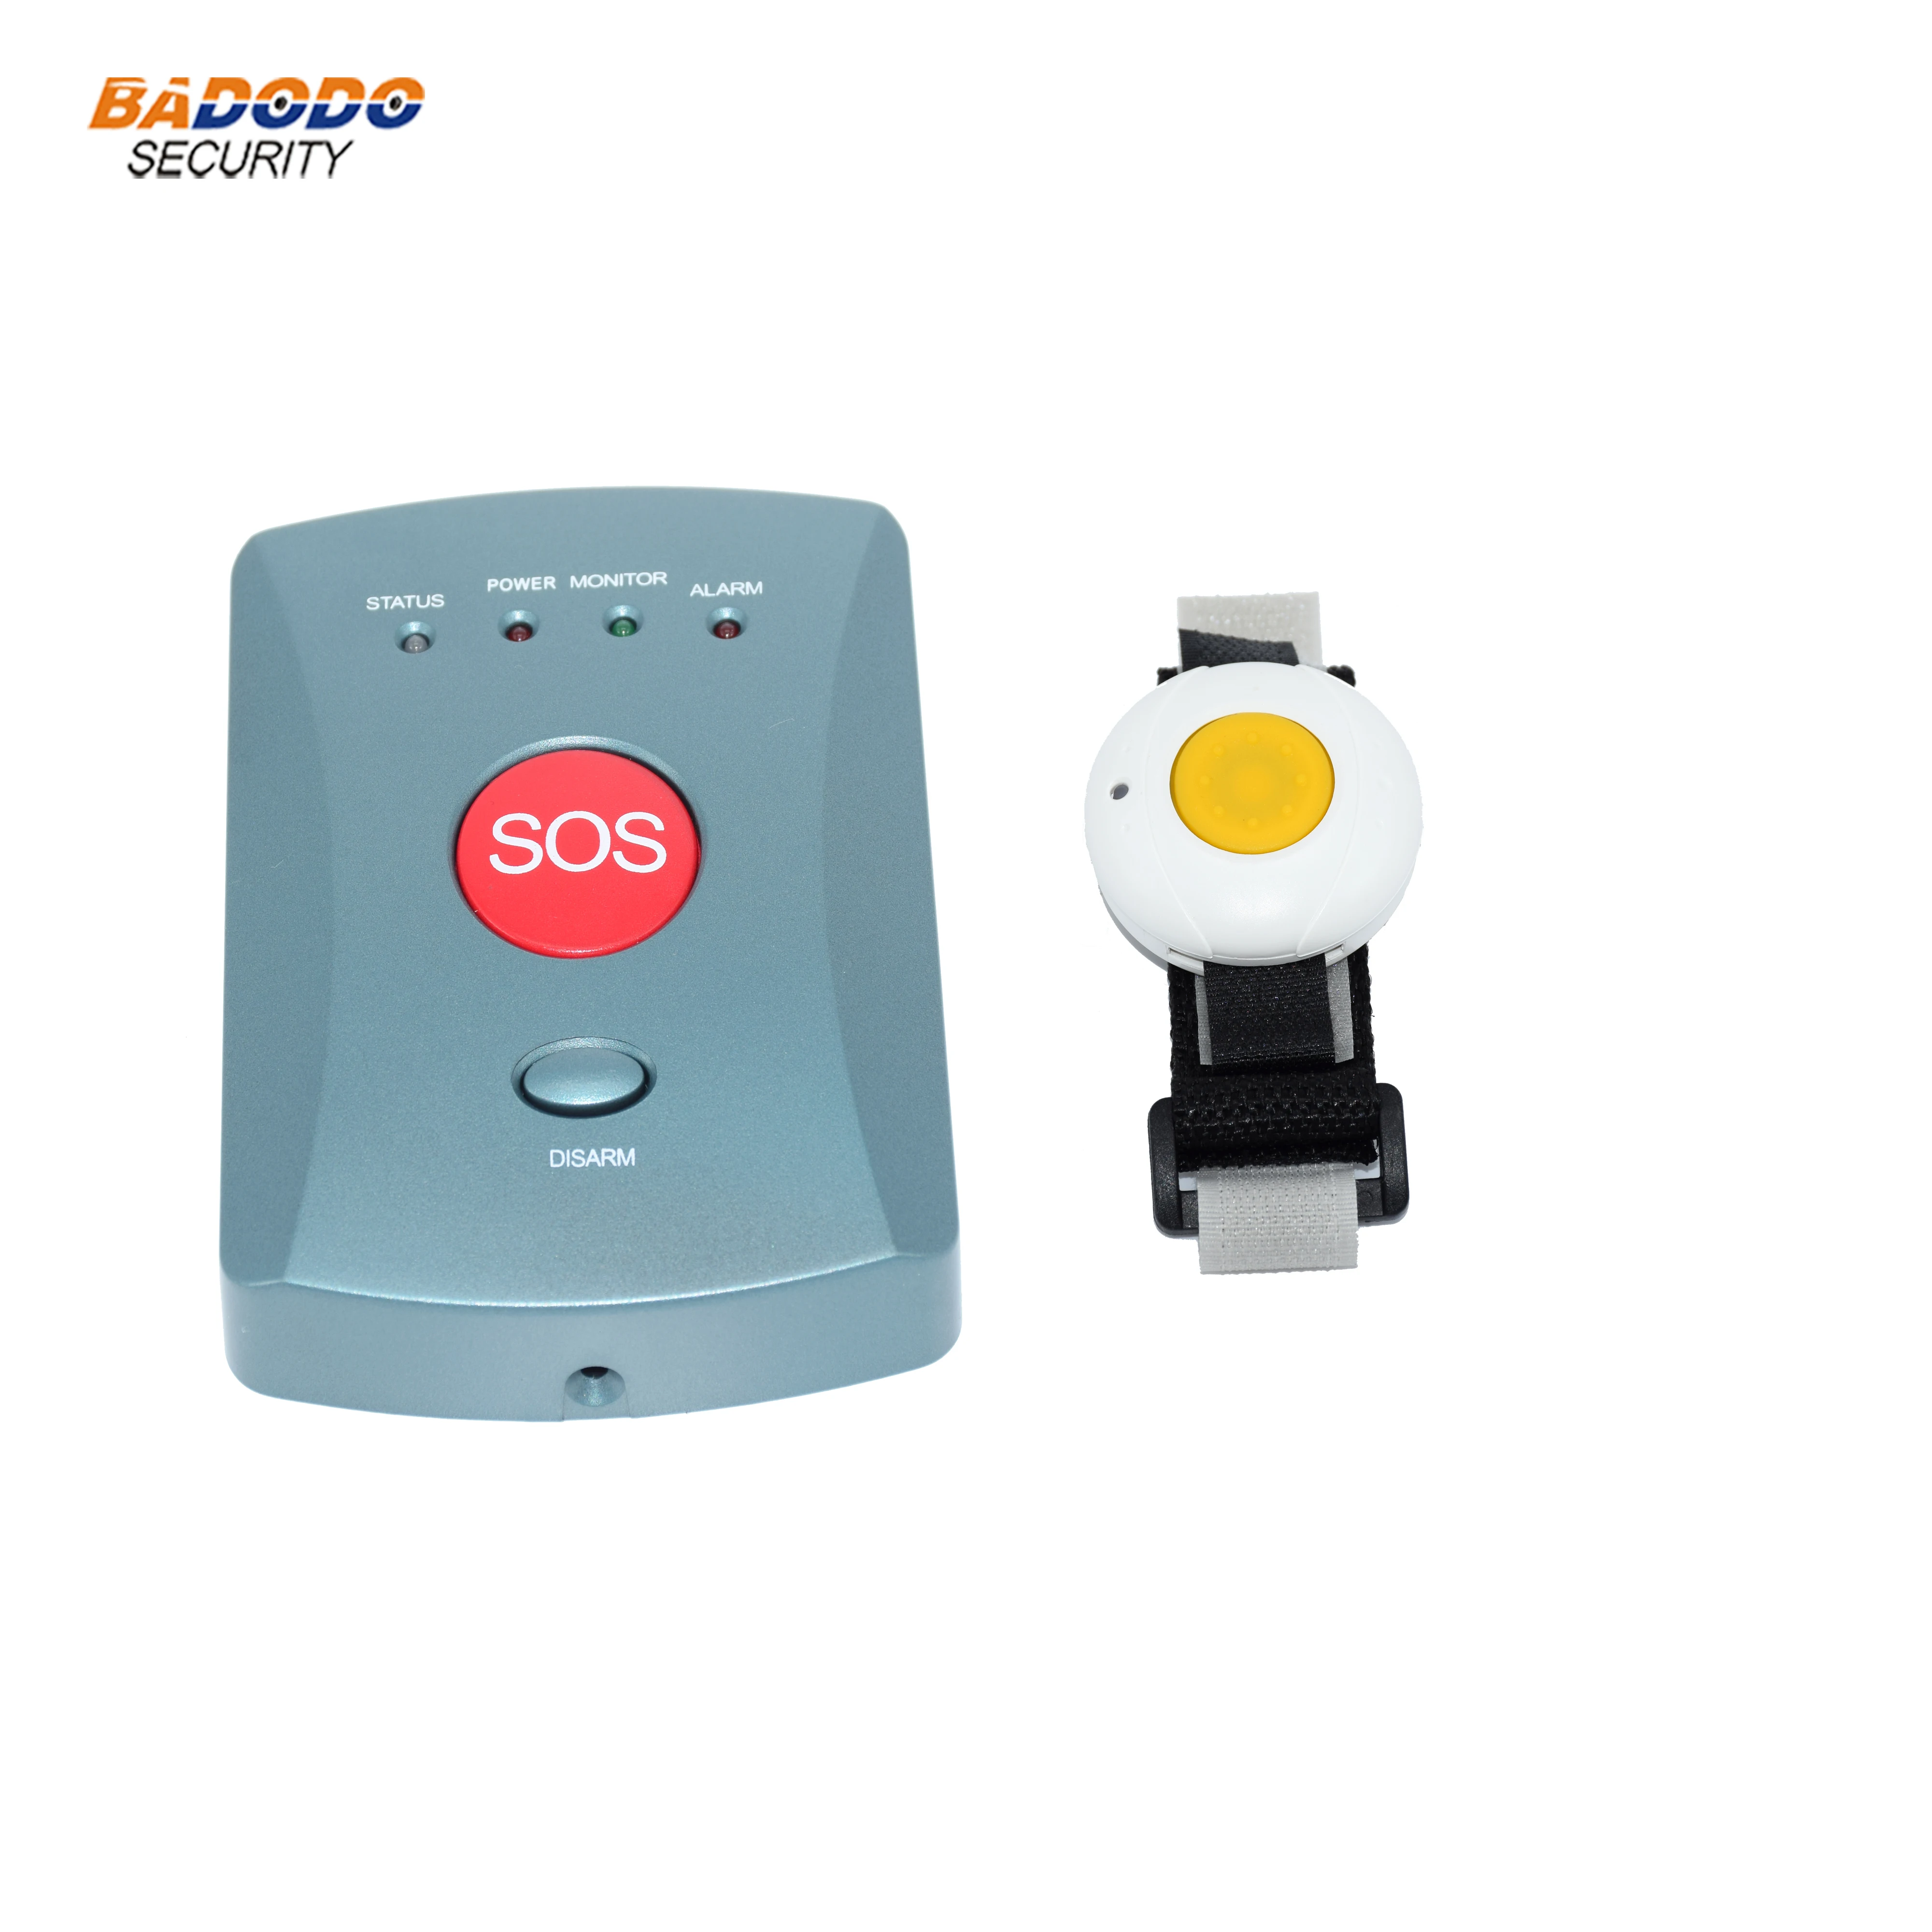 CAPMESSO Inalámbrico Sistema de Alerta de Seguridad para El hogar con Botón de Llamada de Emergencia Monitor de Llamadas para Personas Mayores 